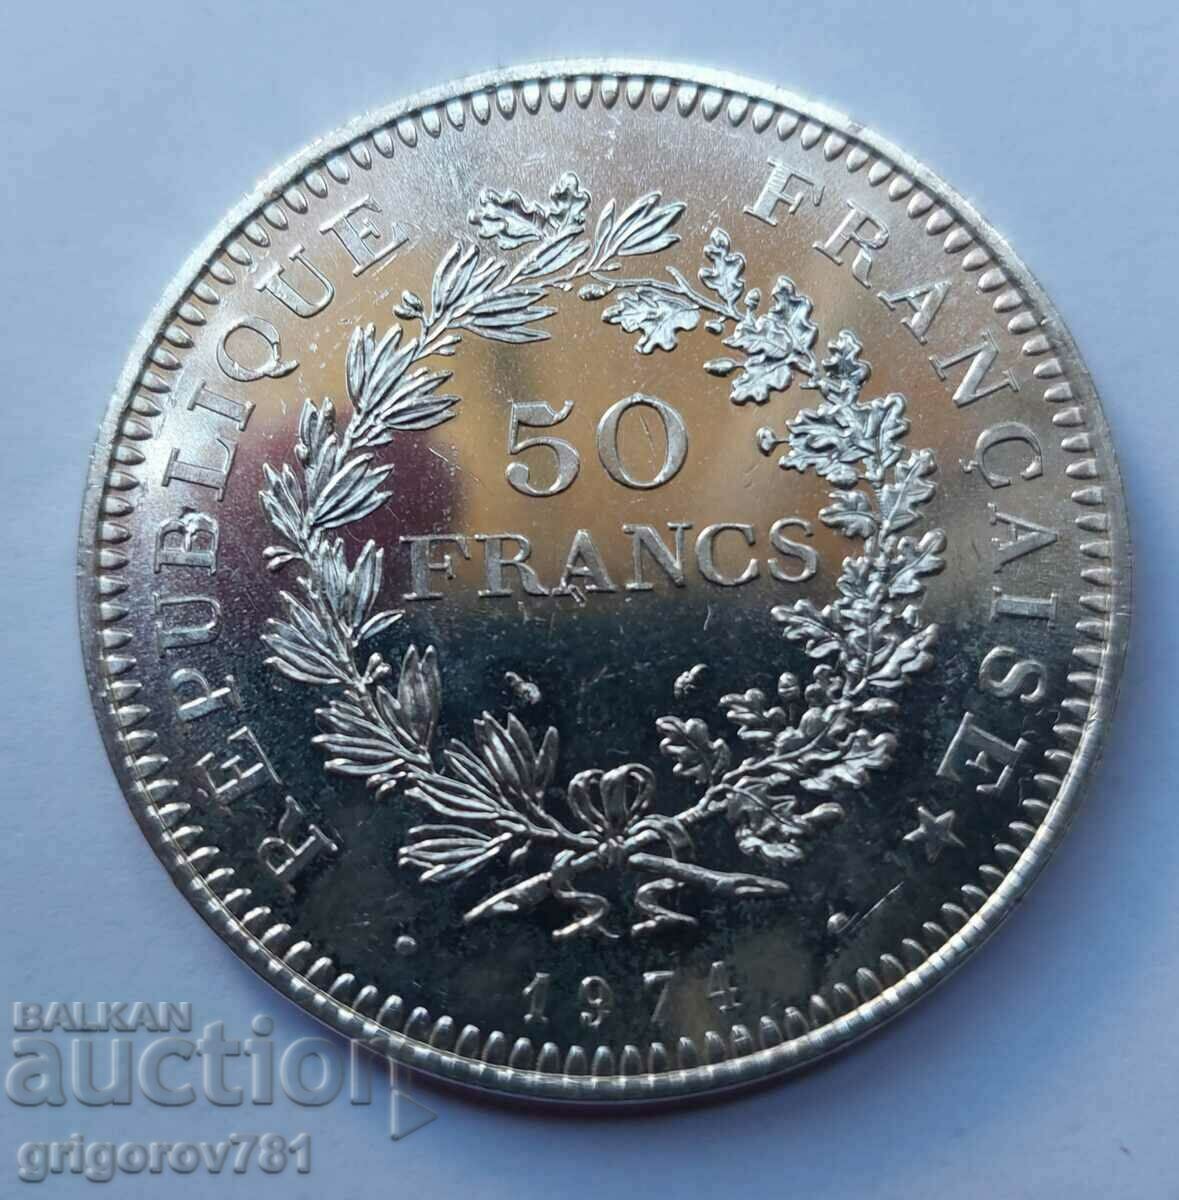 Ασήμι 50 φράγκων Γαλλία 1974 - Ασημένιο νόμισμα #19